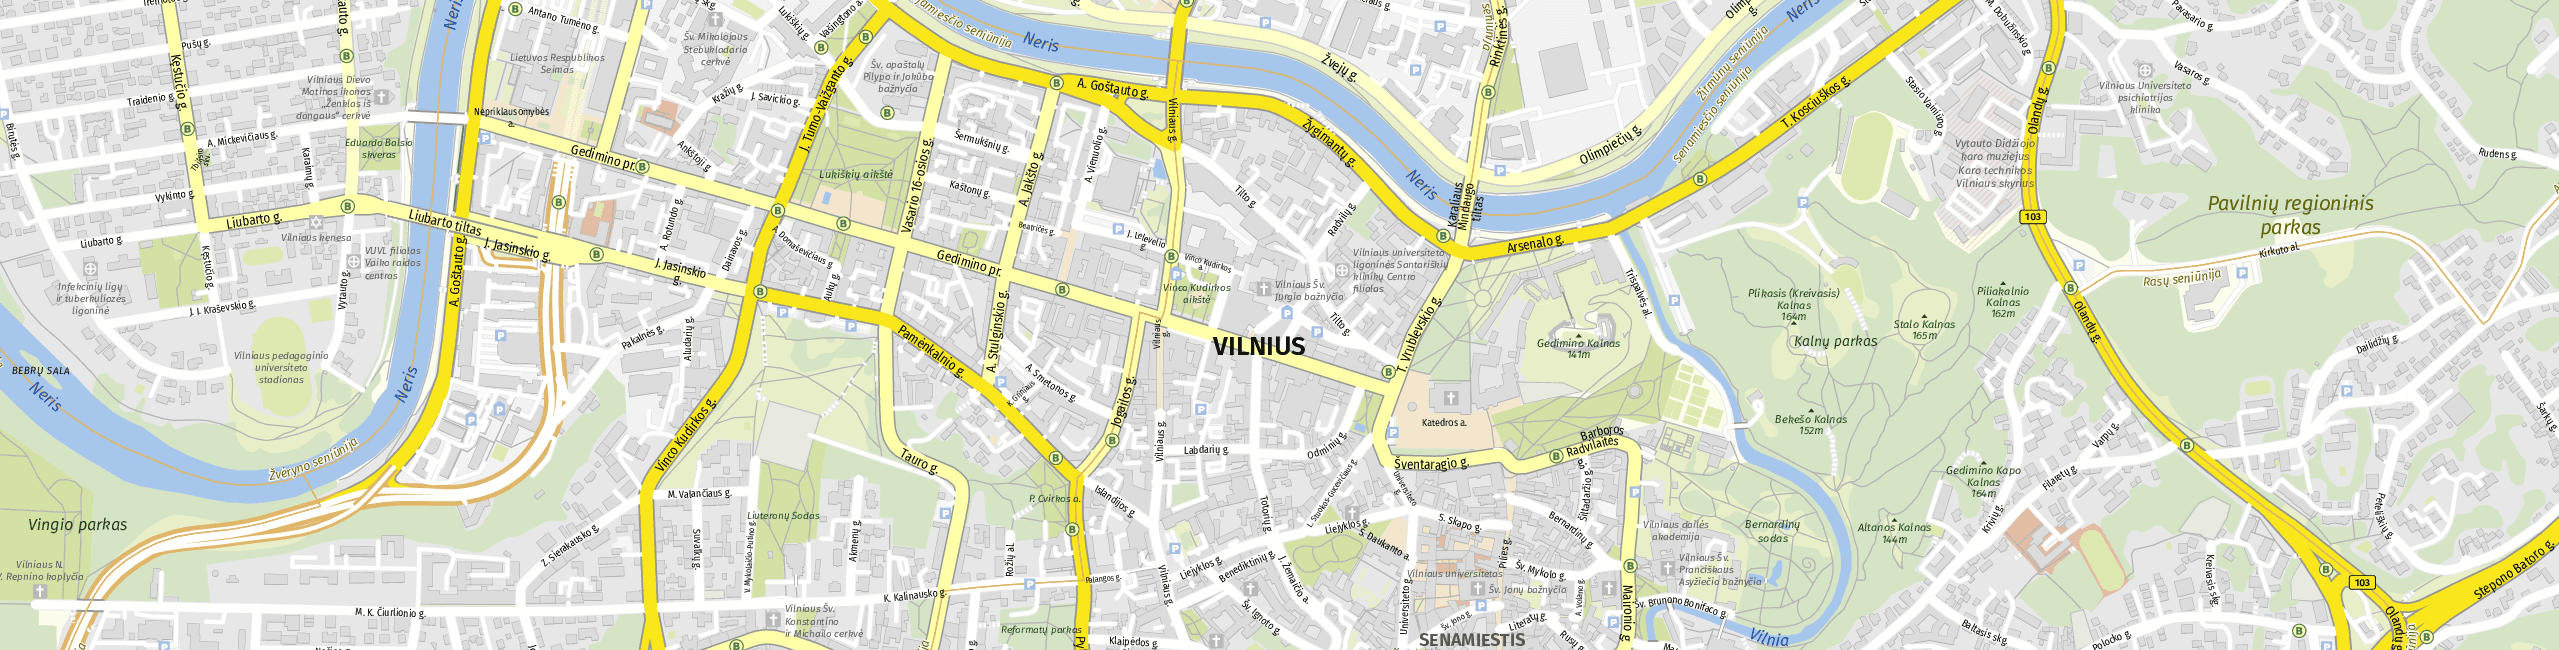 Stadtplan Vilnius zum Downloaden.